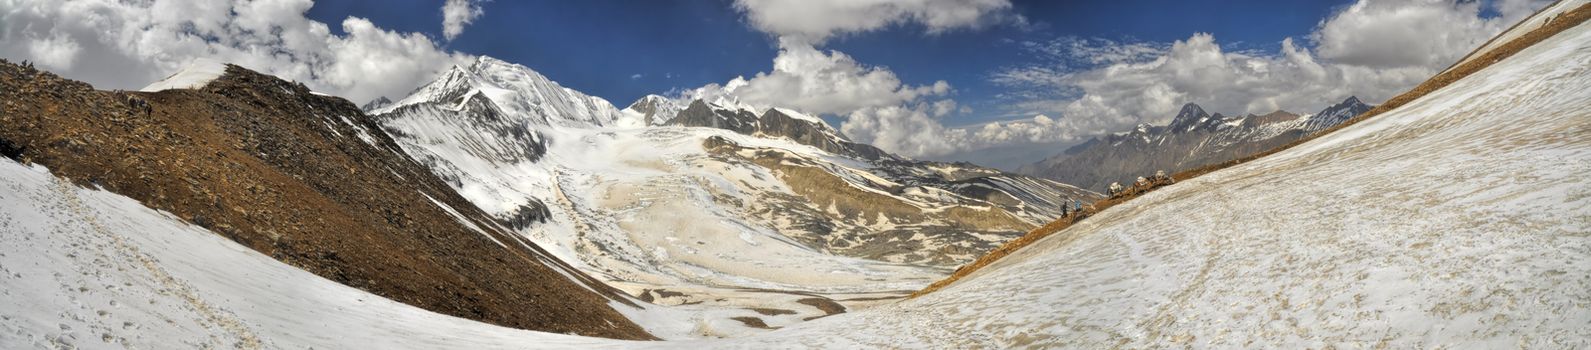 Scenic panorama in Dolpo region in Nepal